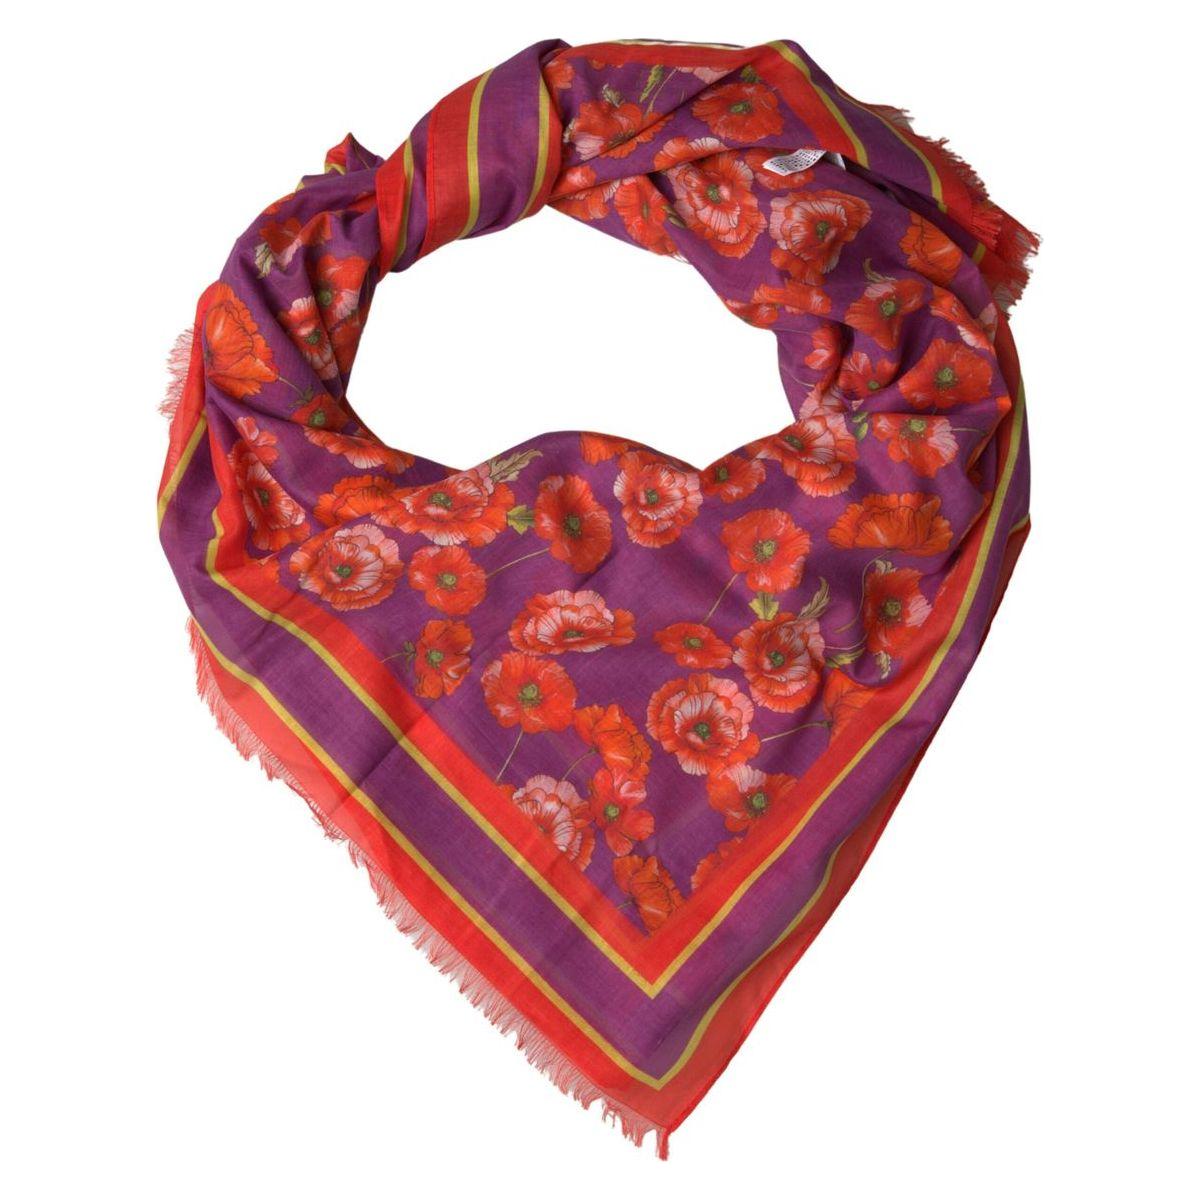 Dolce & Gabbana Elegant Red Cotton Scarf for Women red-floral-cotton-shawl-wrap-foulard-scarf 465A4202-scaled-228bfaef-a64_5f5649bf-6eb2-405e-9199-ec396b39b5e4.jpg